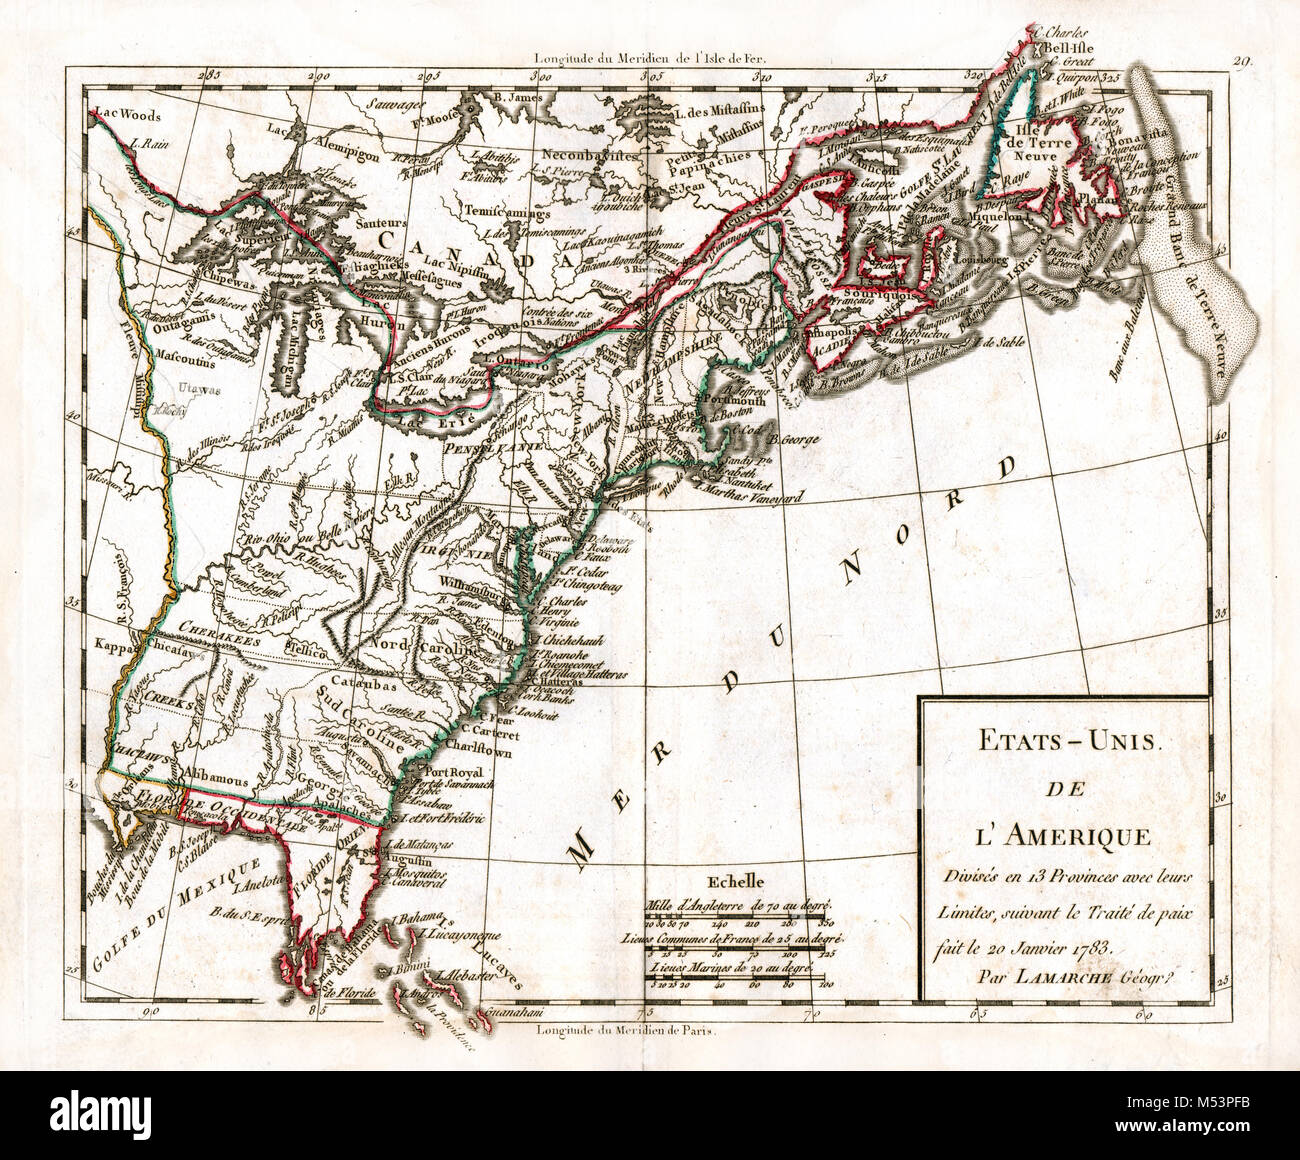 1783 Delamarche Atlas Map - United States of America - Original 13 Colonies 1783 Peace Treaty - American Revolution Stock Photo